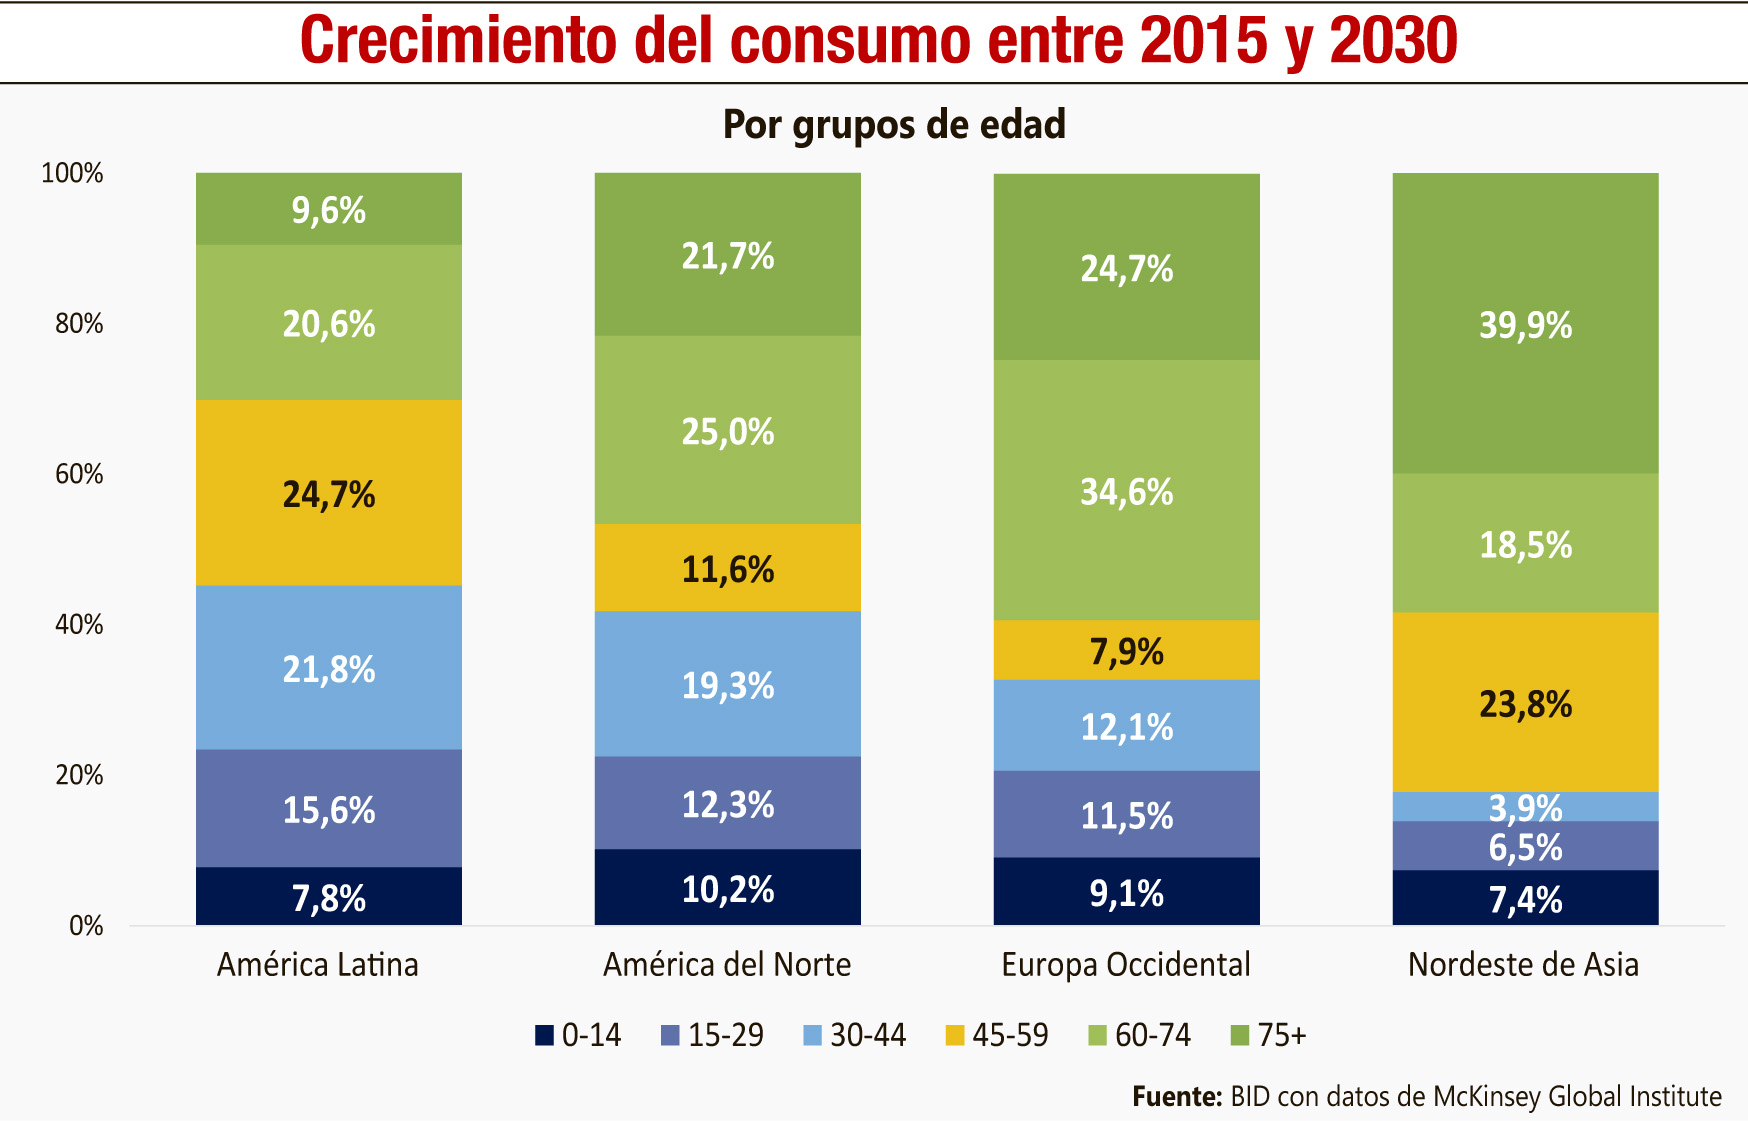 CRECIMIENDO DEL CONSUMO ENTRE 2015 Y 2030